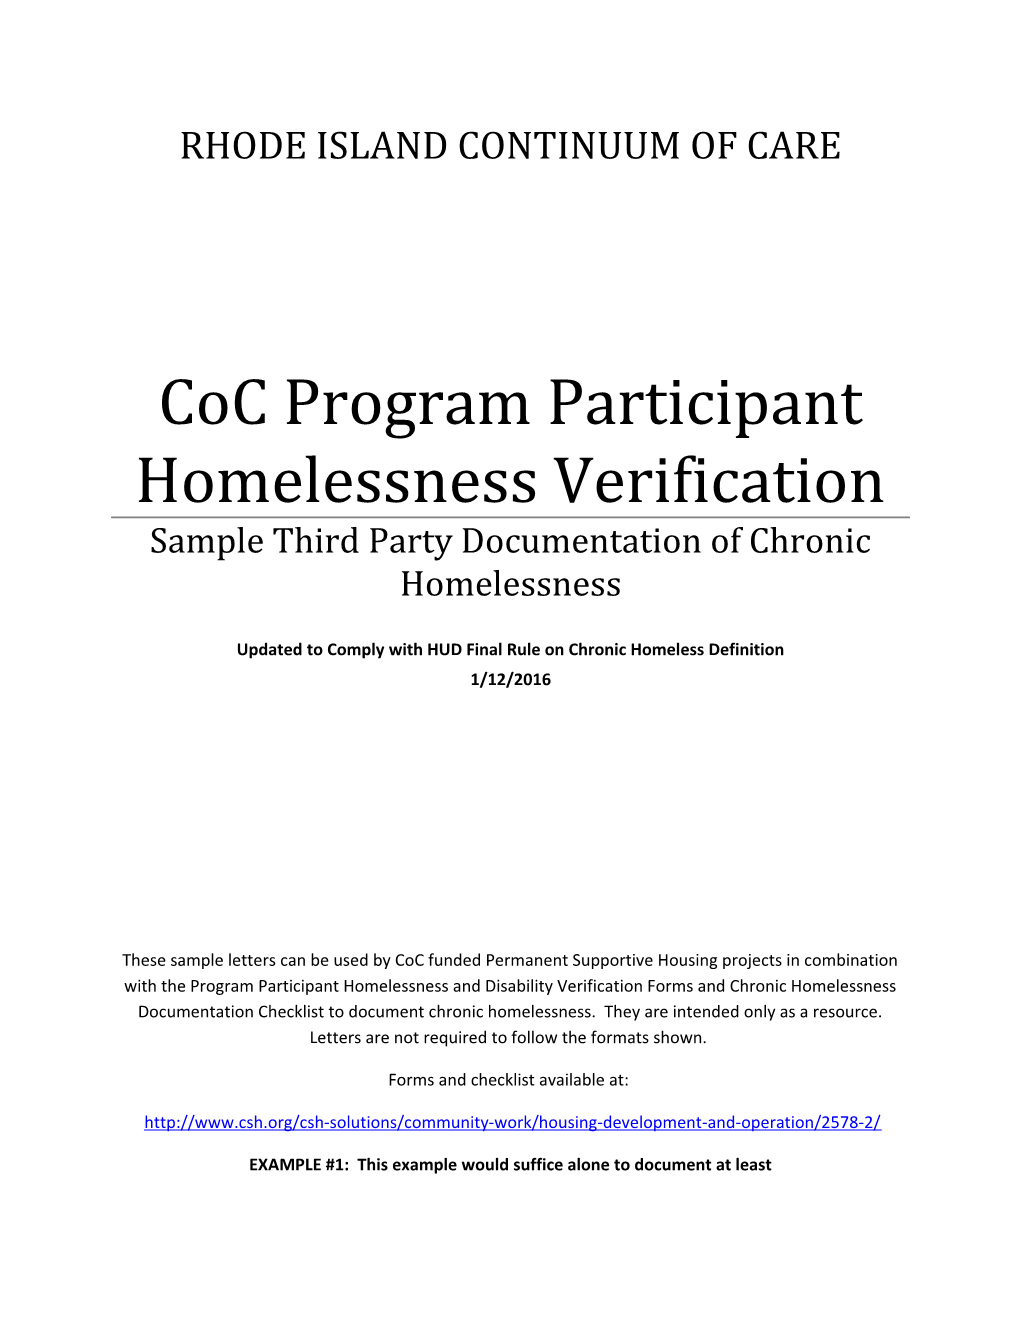 Coc Program Participant Homelessness Verification